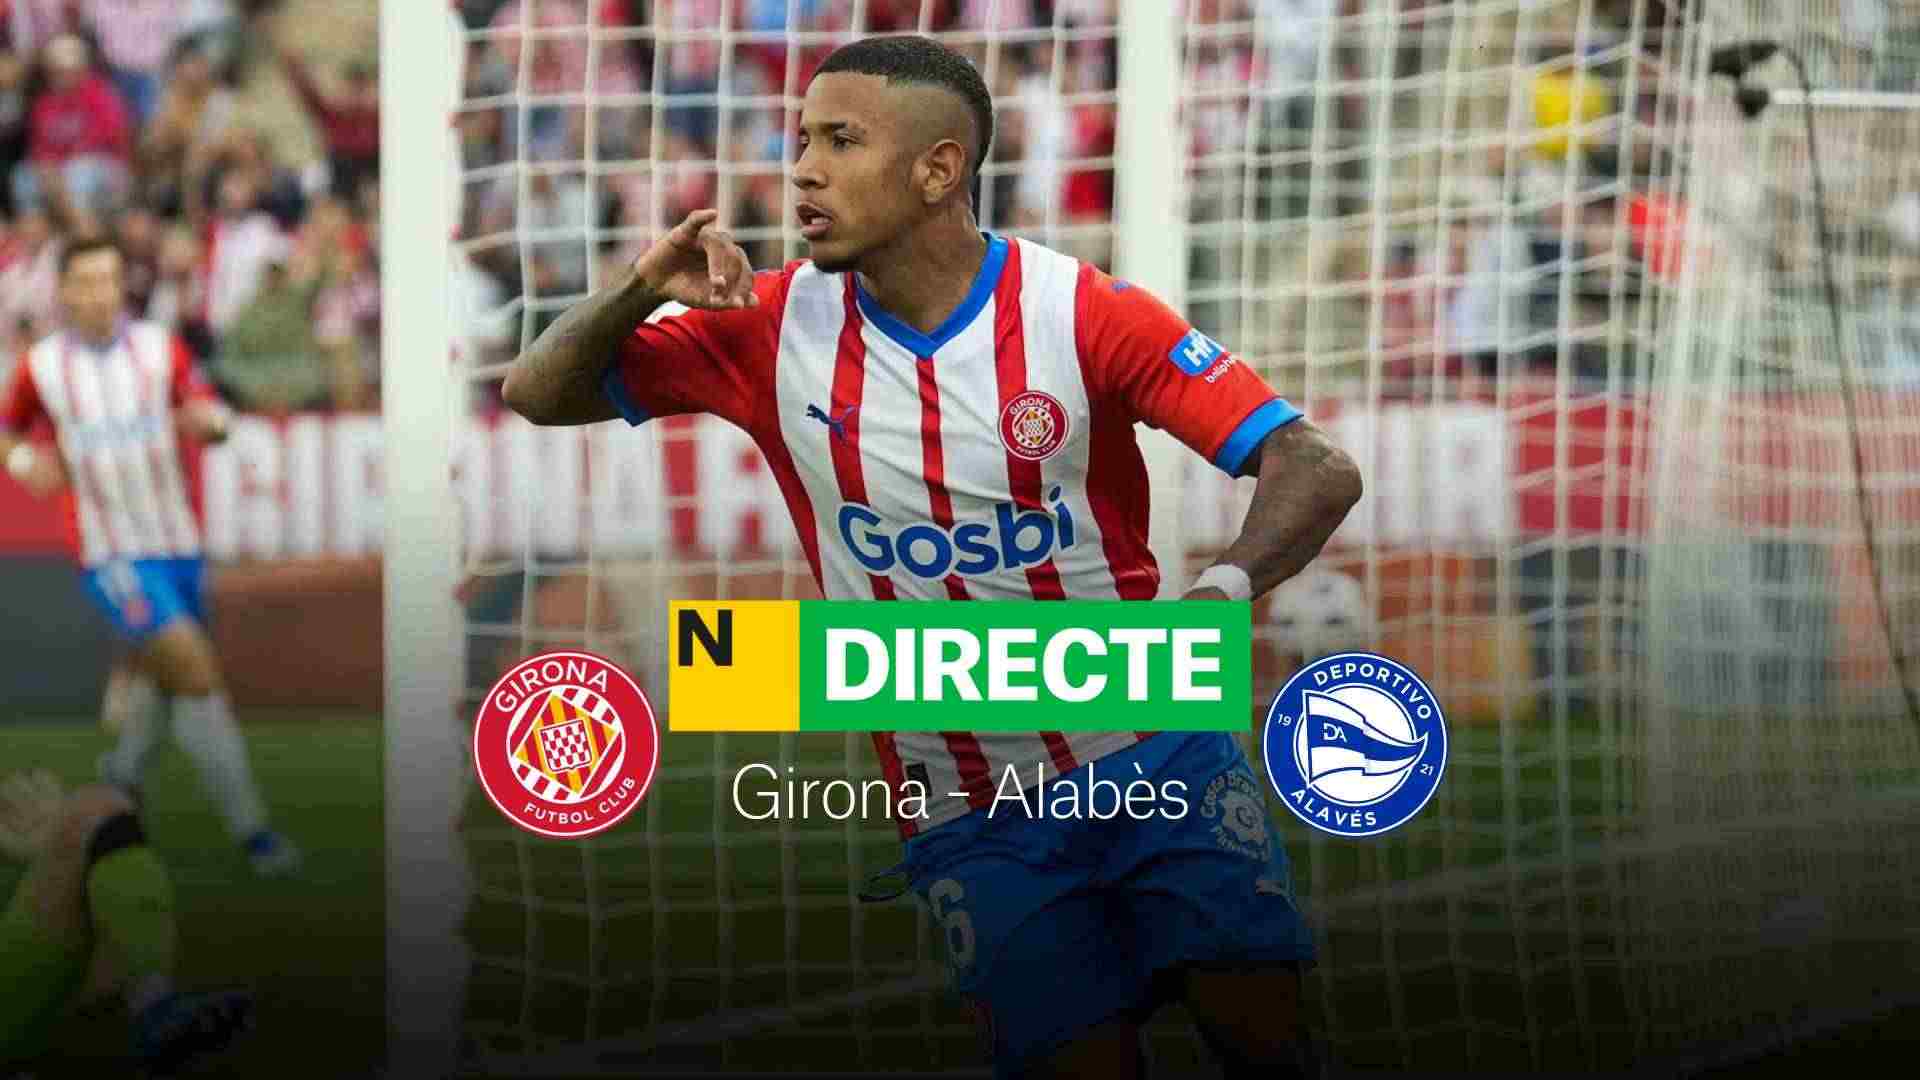 Girona - Alabès de LaLiga EA Sports avui, DIRECTE | Resultat, resum i gols